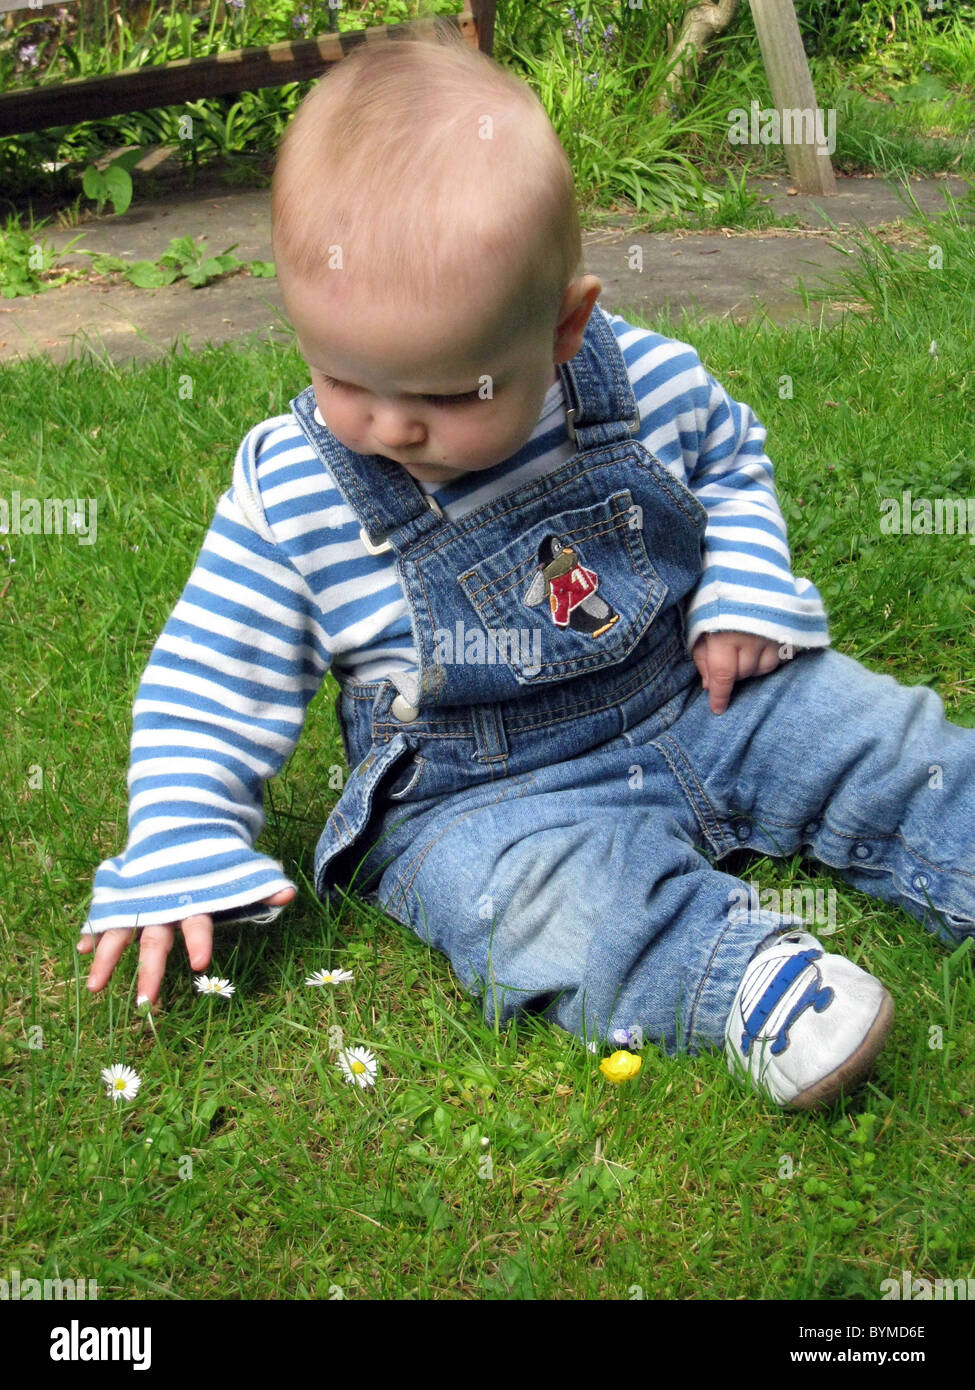 15 mesi baby sitting osservando e toccando i fiori selvatici sull'erba Foto Stock